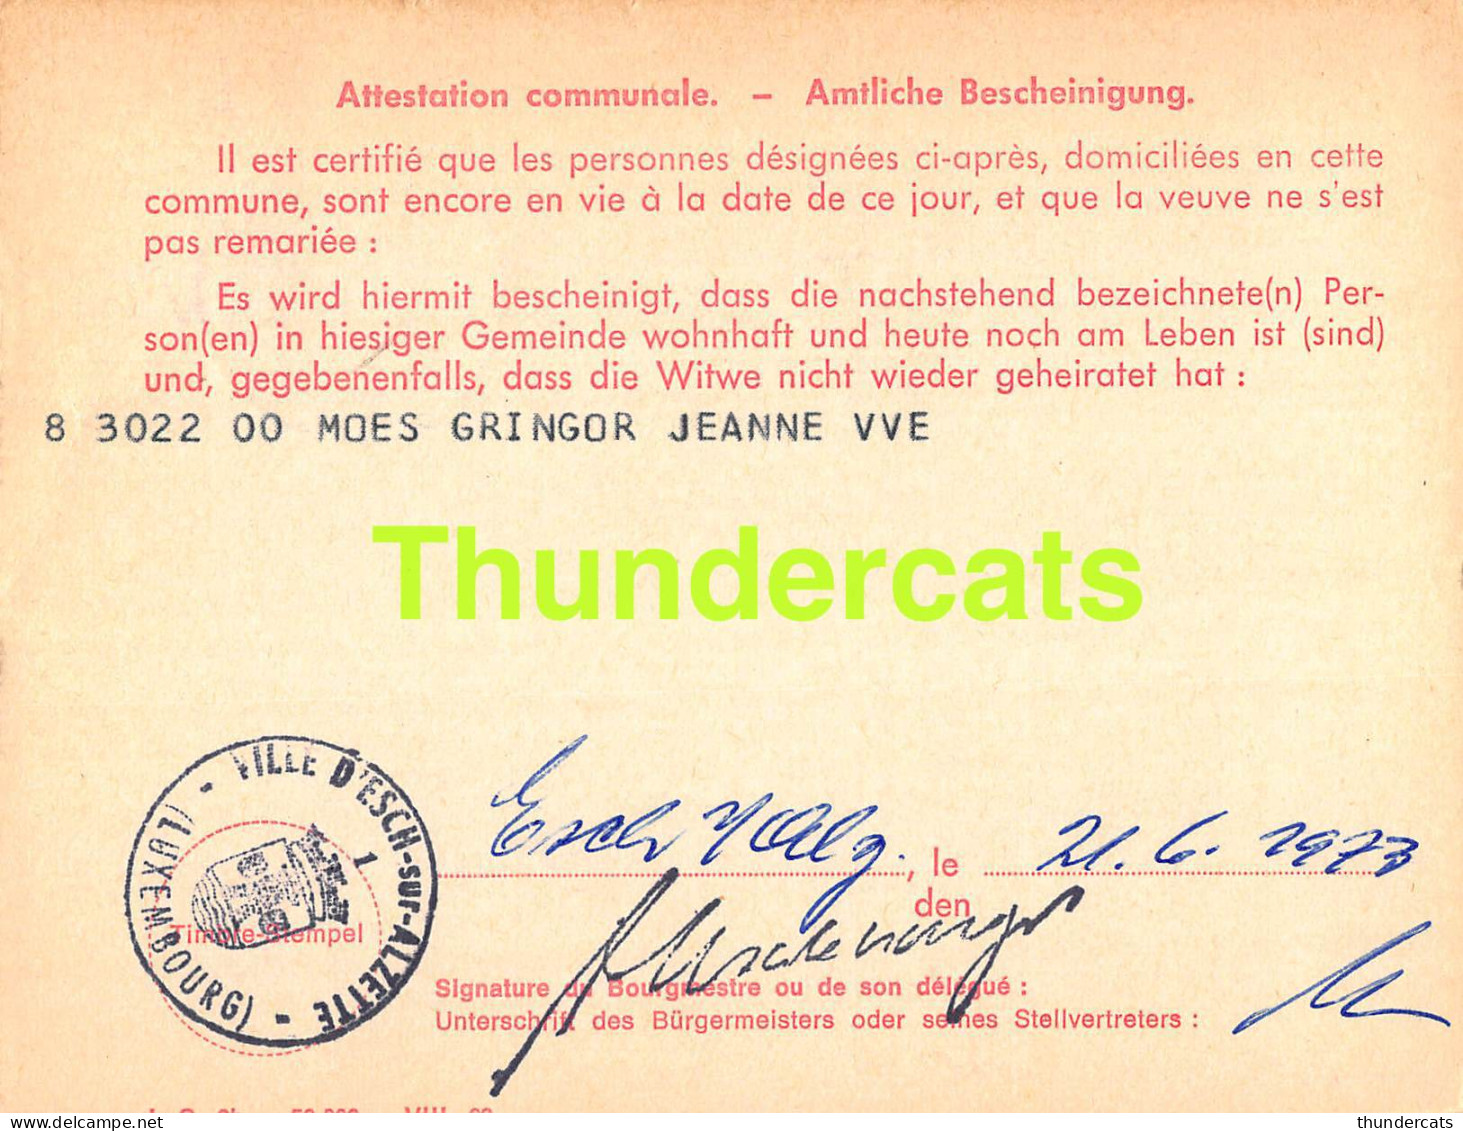 ASSURANCE VIEILLESSE INVALIDITE LUXEMBOURG 1973 MOES GRINGOR VILLE D'ESCH ALZETTE  - Covers & Documents